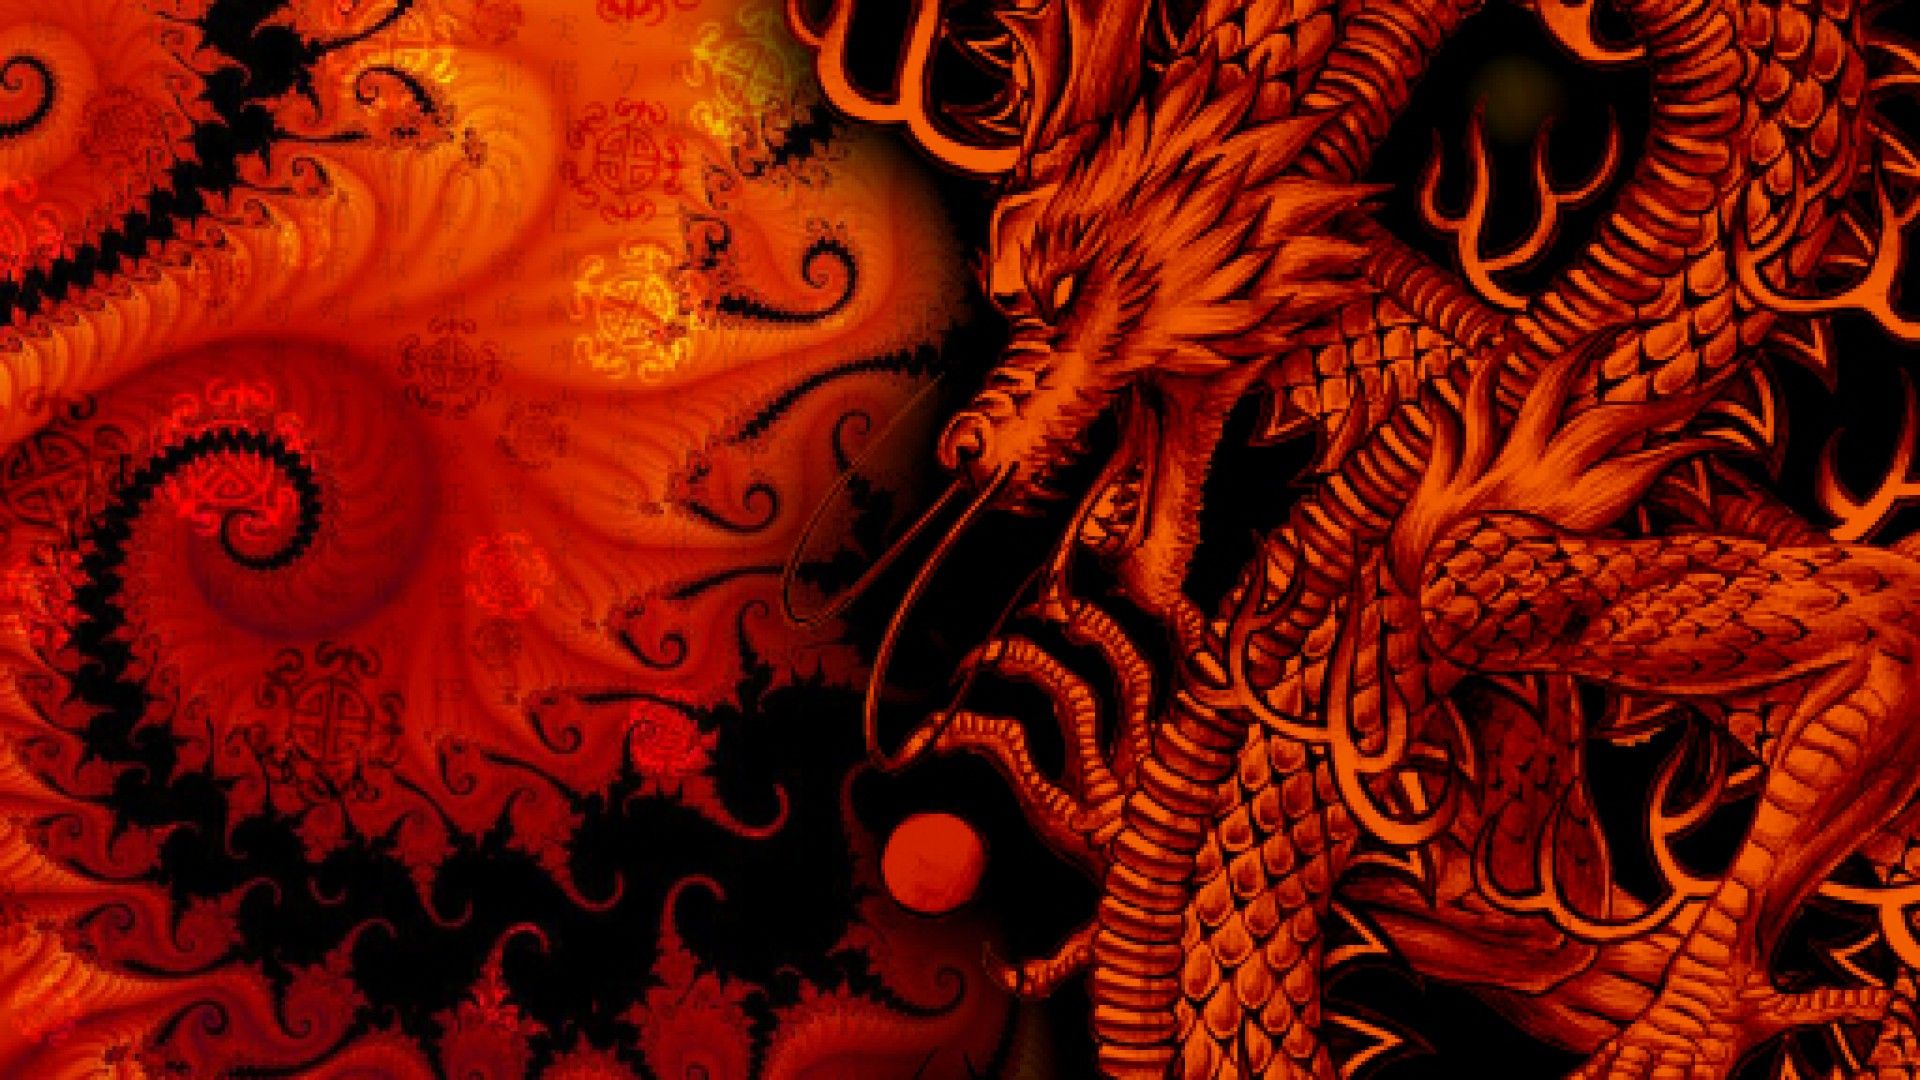 Dragon wallpaper: Hình nền rồng sẽ mang lại sự mạnh mẽ và uy nghiêm cho màn hình của bạn. Hãy cập nhật cho thiết bị của mình một bộ sưu tập hình nền đầy ấn tượng về loài rồng.